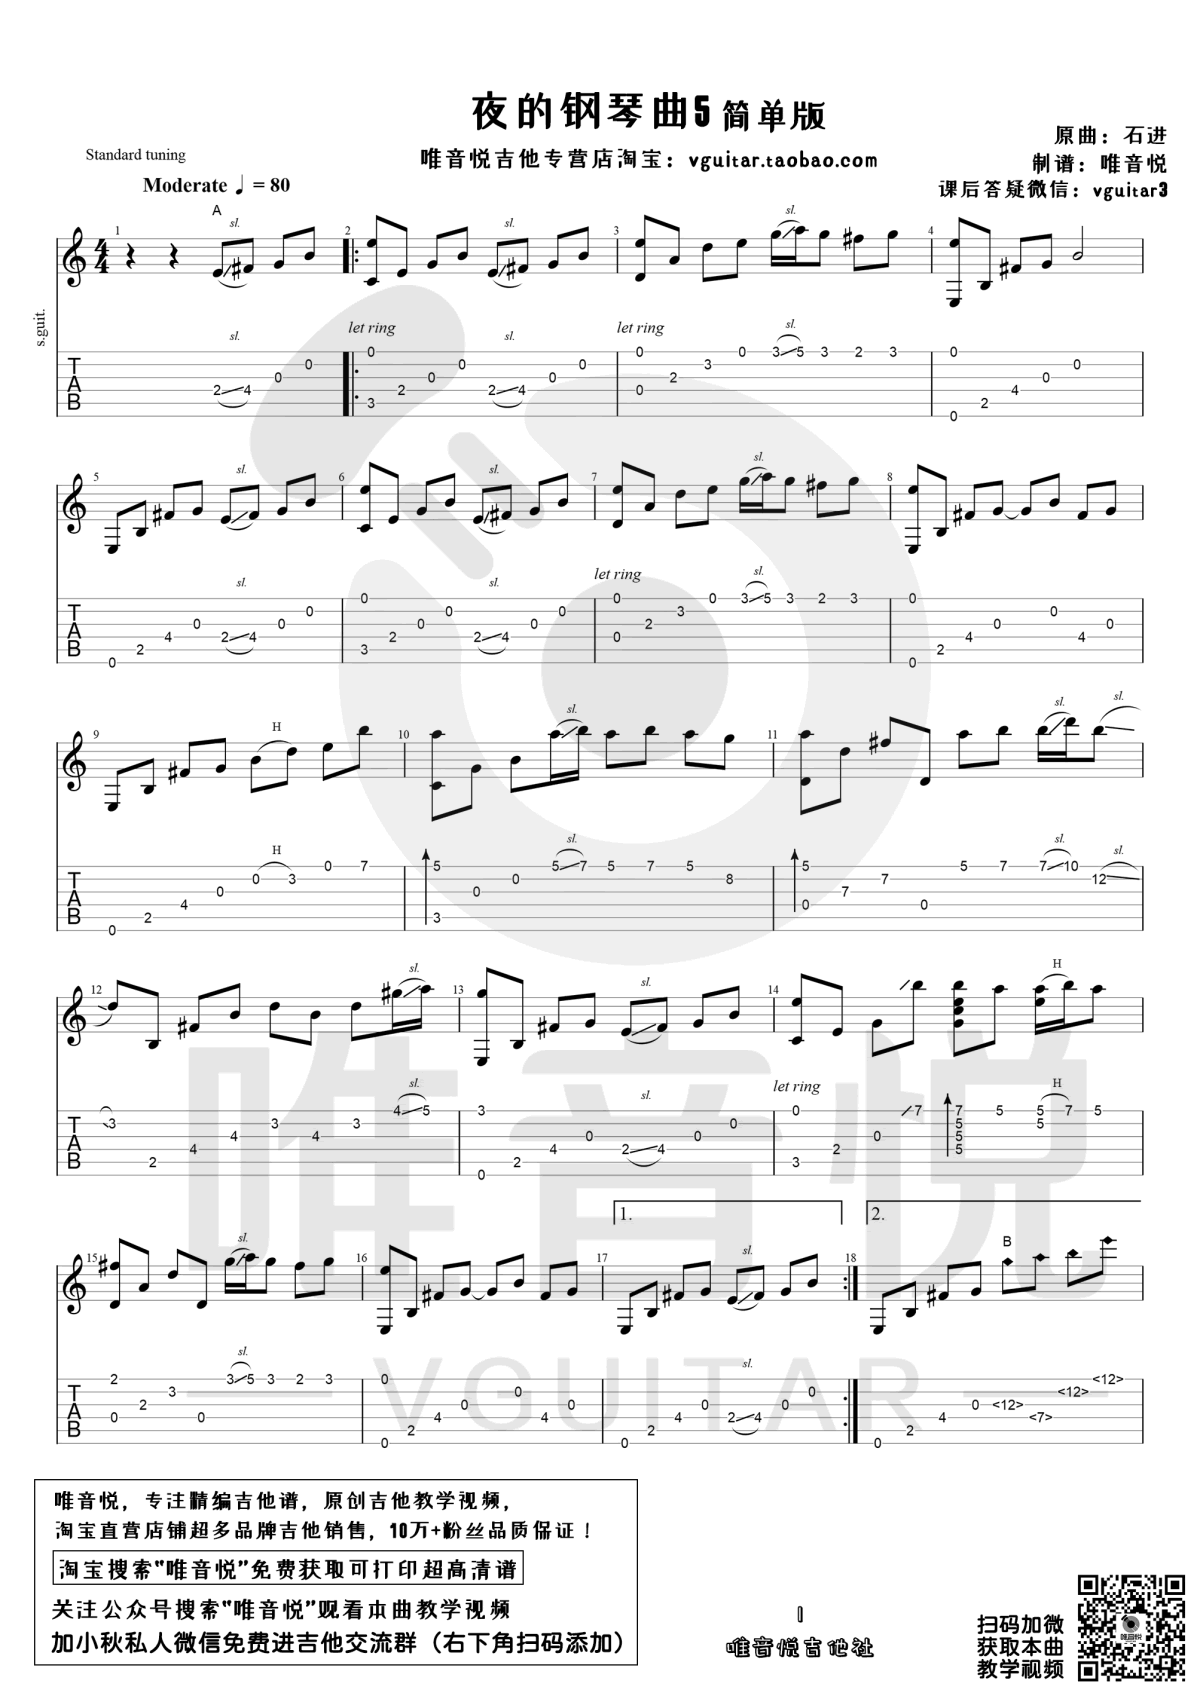 夜的钢琴曲五-BiBiPiano版钢琴谱-ziyun969-虫虫钢琴